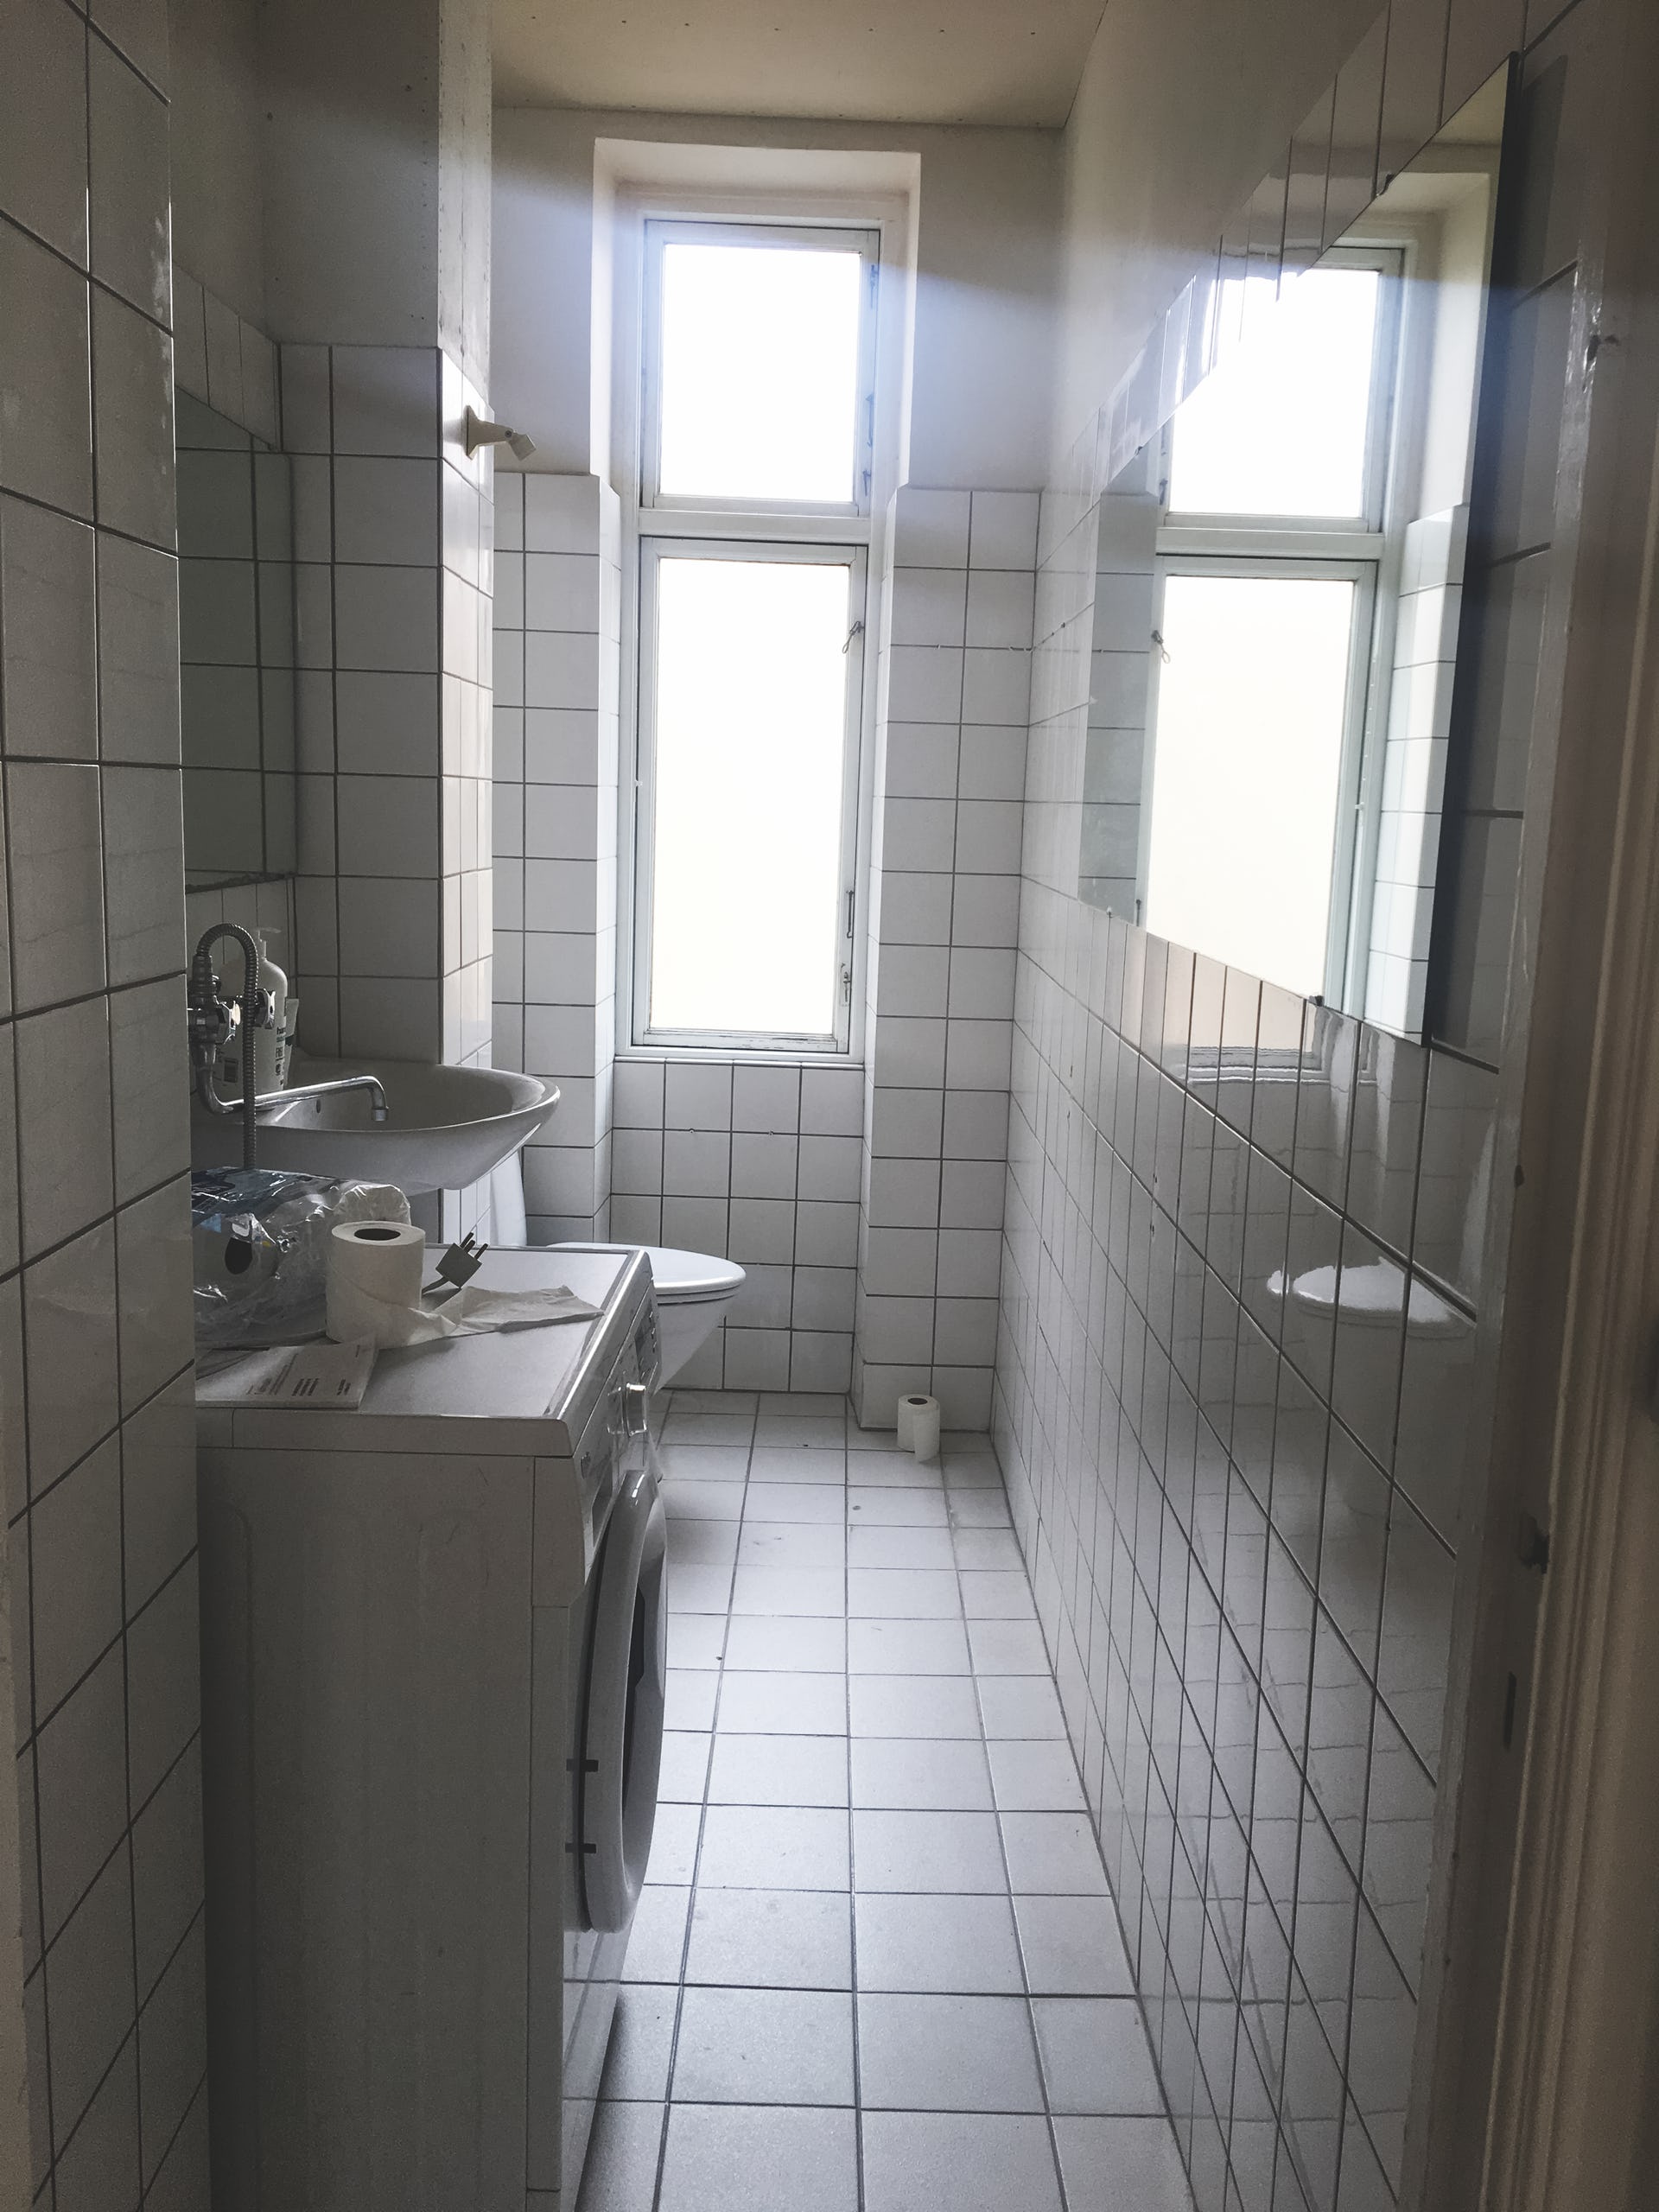 cải tạo nhà tắm thành spa tại gia elledecoration vn